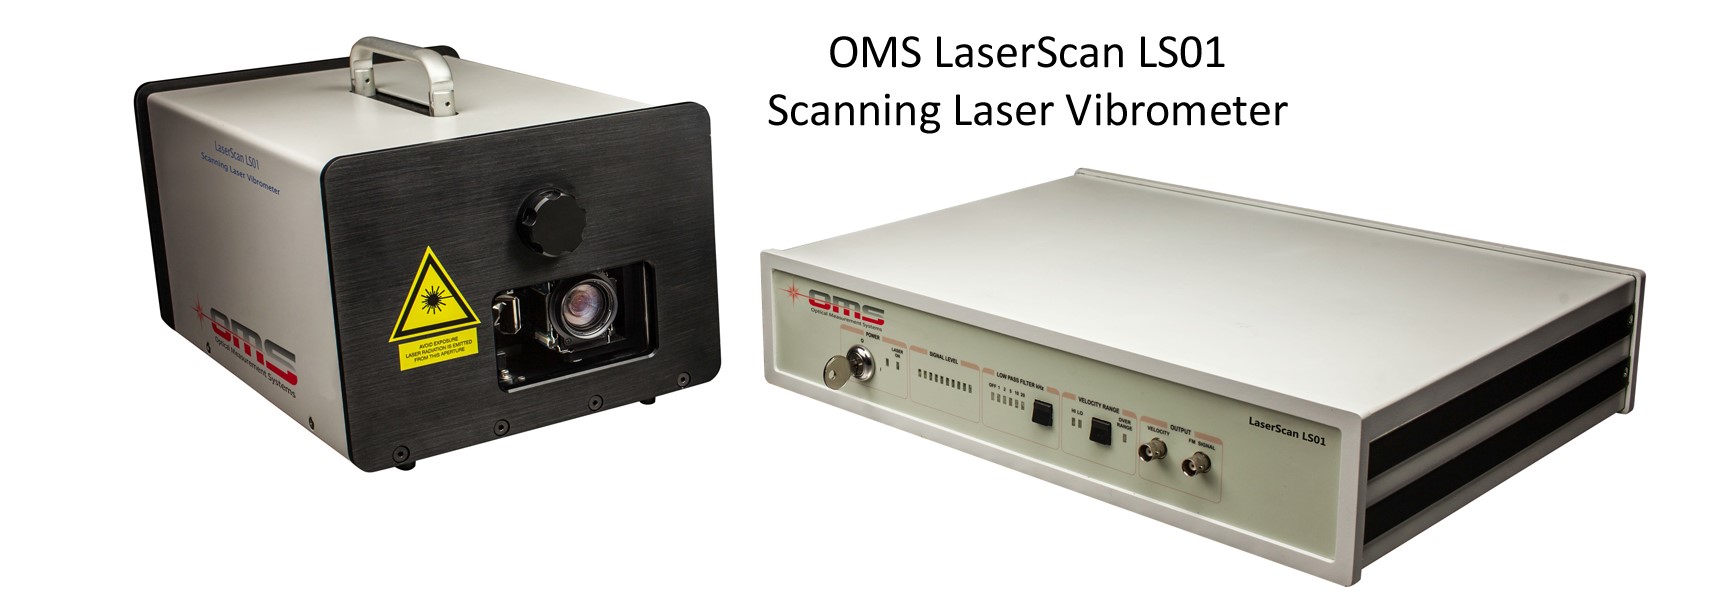 スキャニングレーザー振動計 OMS LaserScan LS01